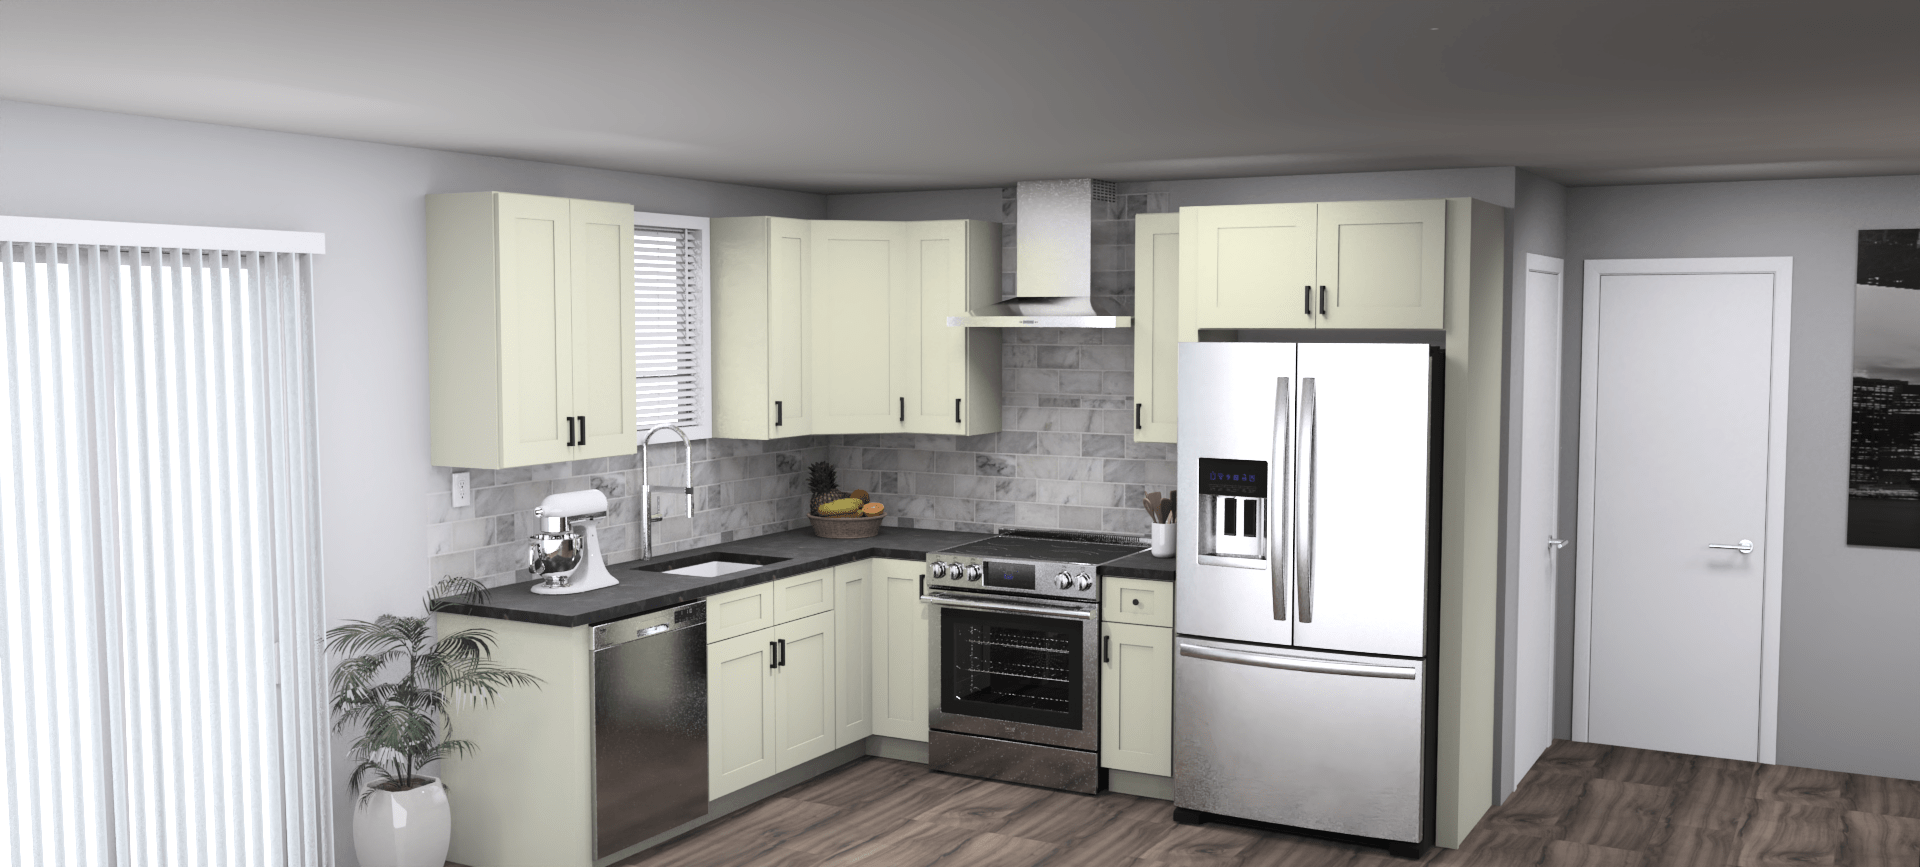 Fabuwood Allure Galaxy Linen 8 x 10 L Shaped Kitchen Main Layout Photo